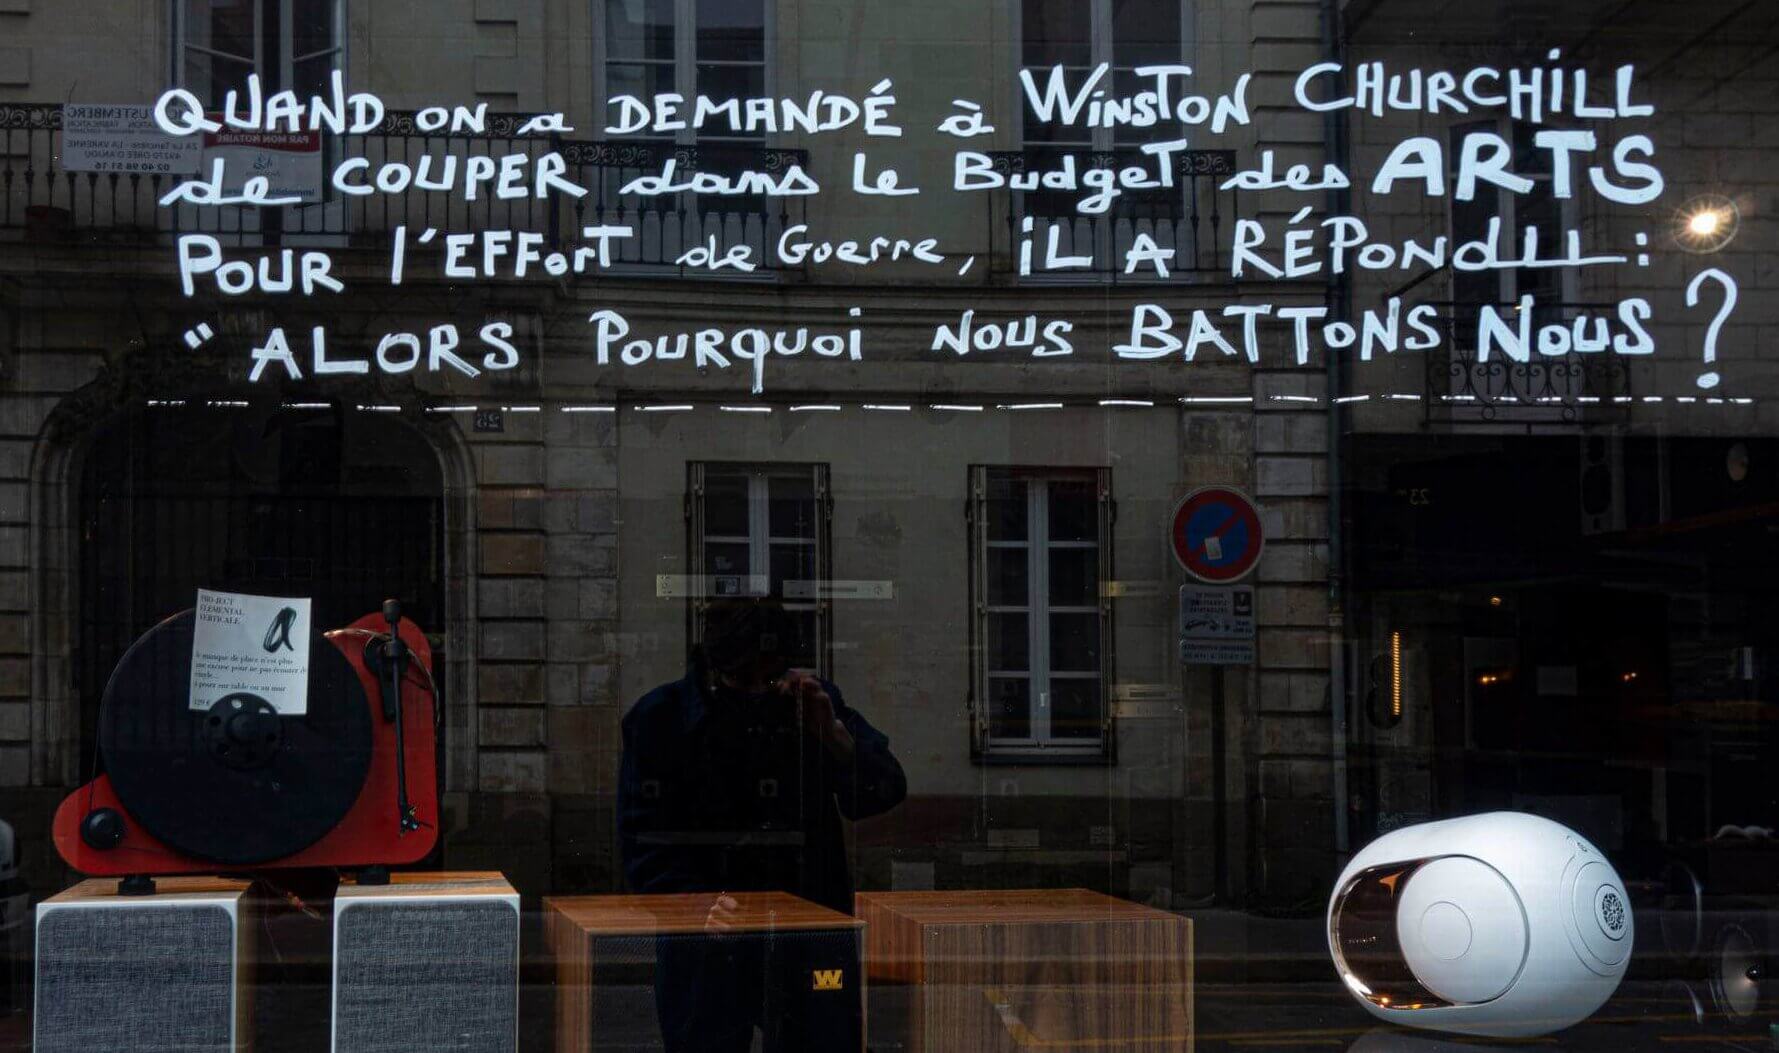 Citation sur notre facade peinte par Mika, artiste peintre sur Nantes.